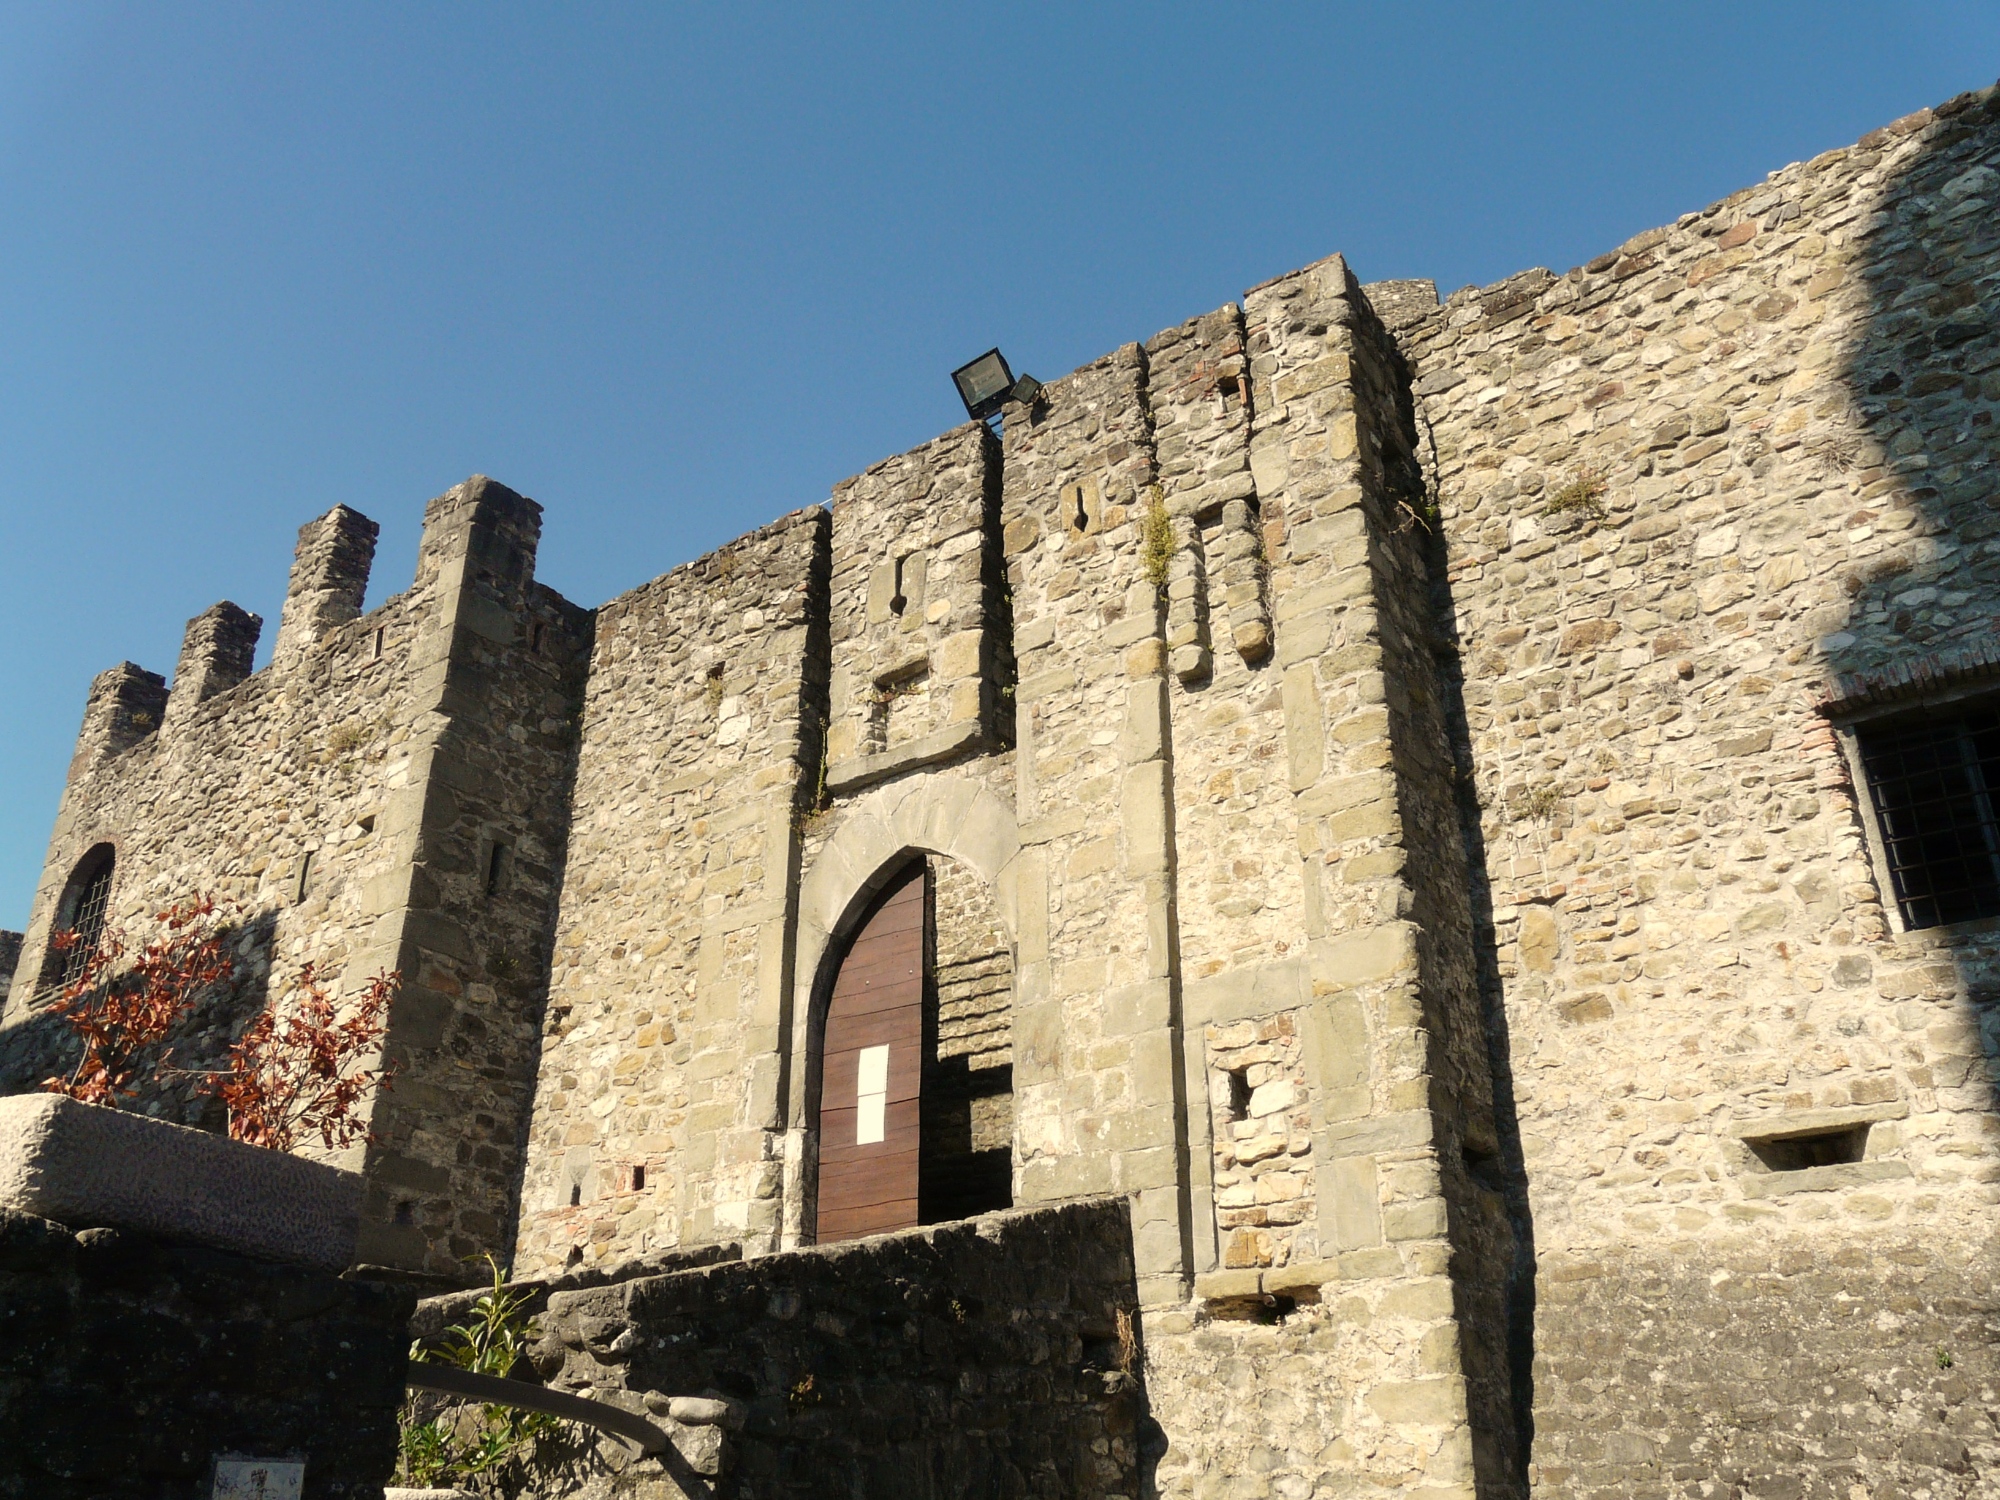 Villafranca in Lunigiana, castello di Malgrate